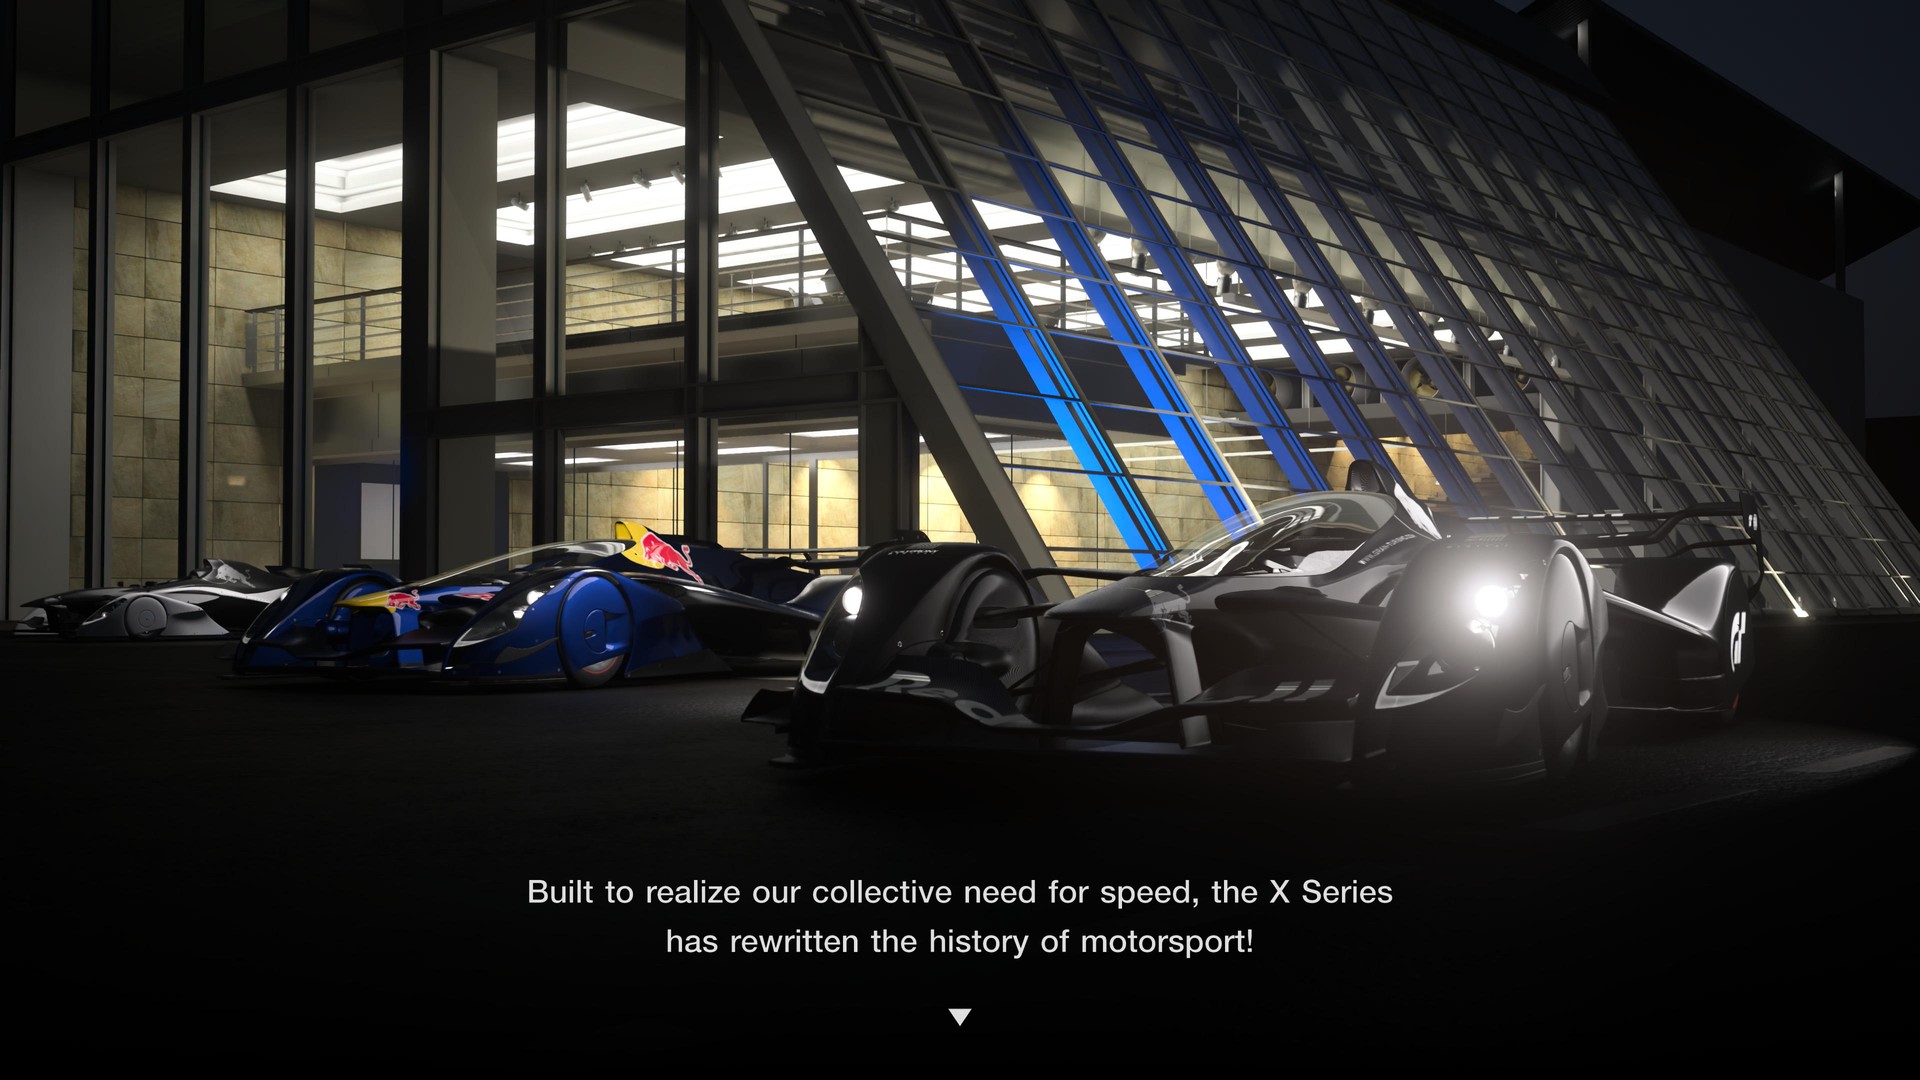 Atualização de Gran Turismo 6 traz carros e desafios